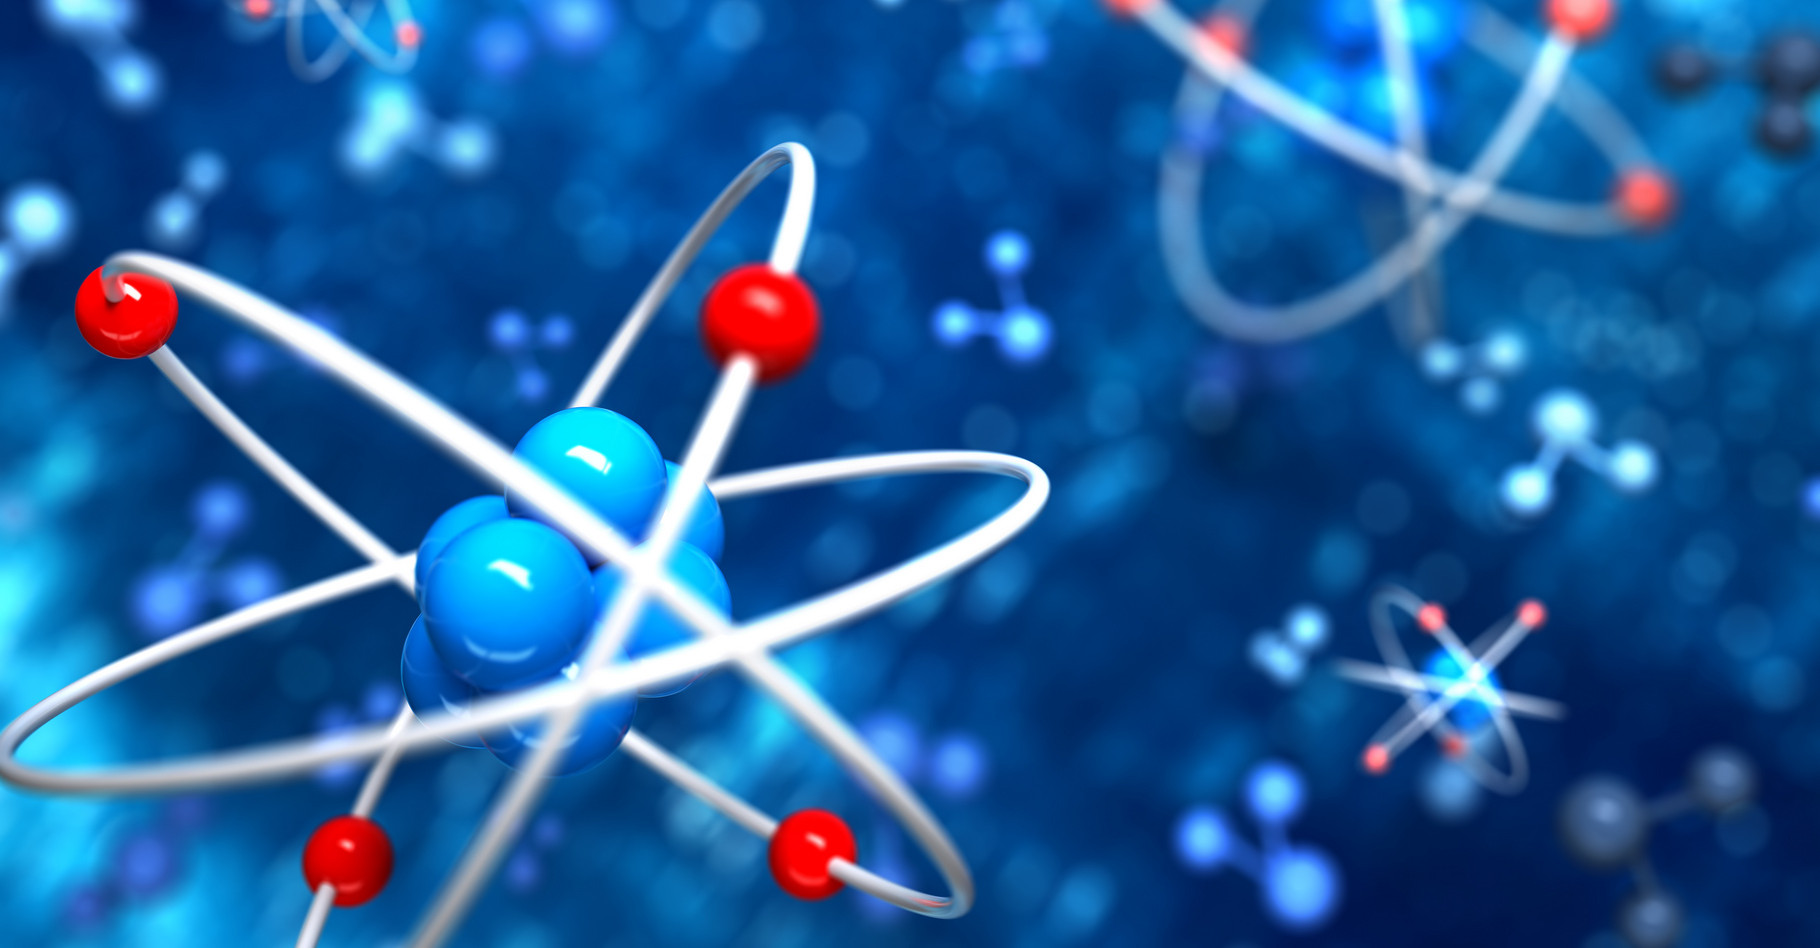 Une représentation symbolique du modèle de l’atome.&nbsp;©&nbsp;Leigh Prather, Shutterstock&nbsp;&nbsp;